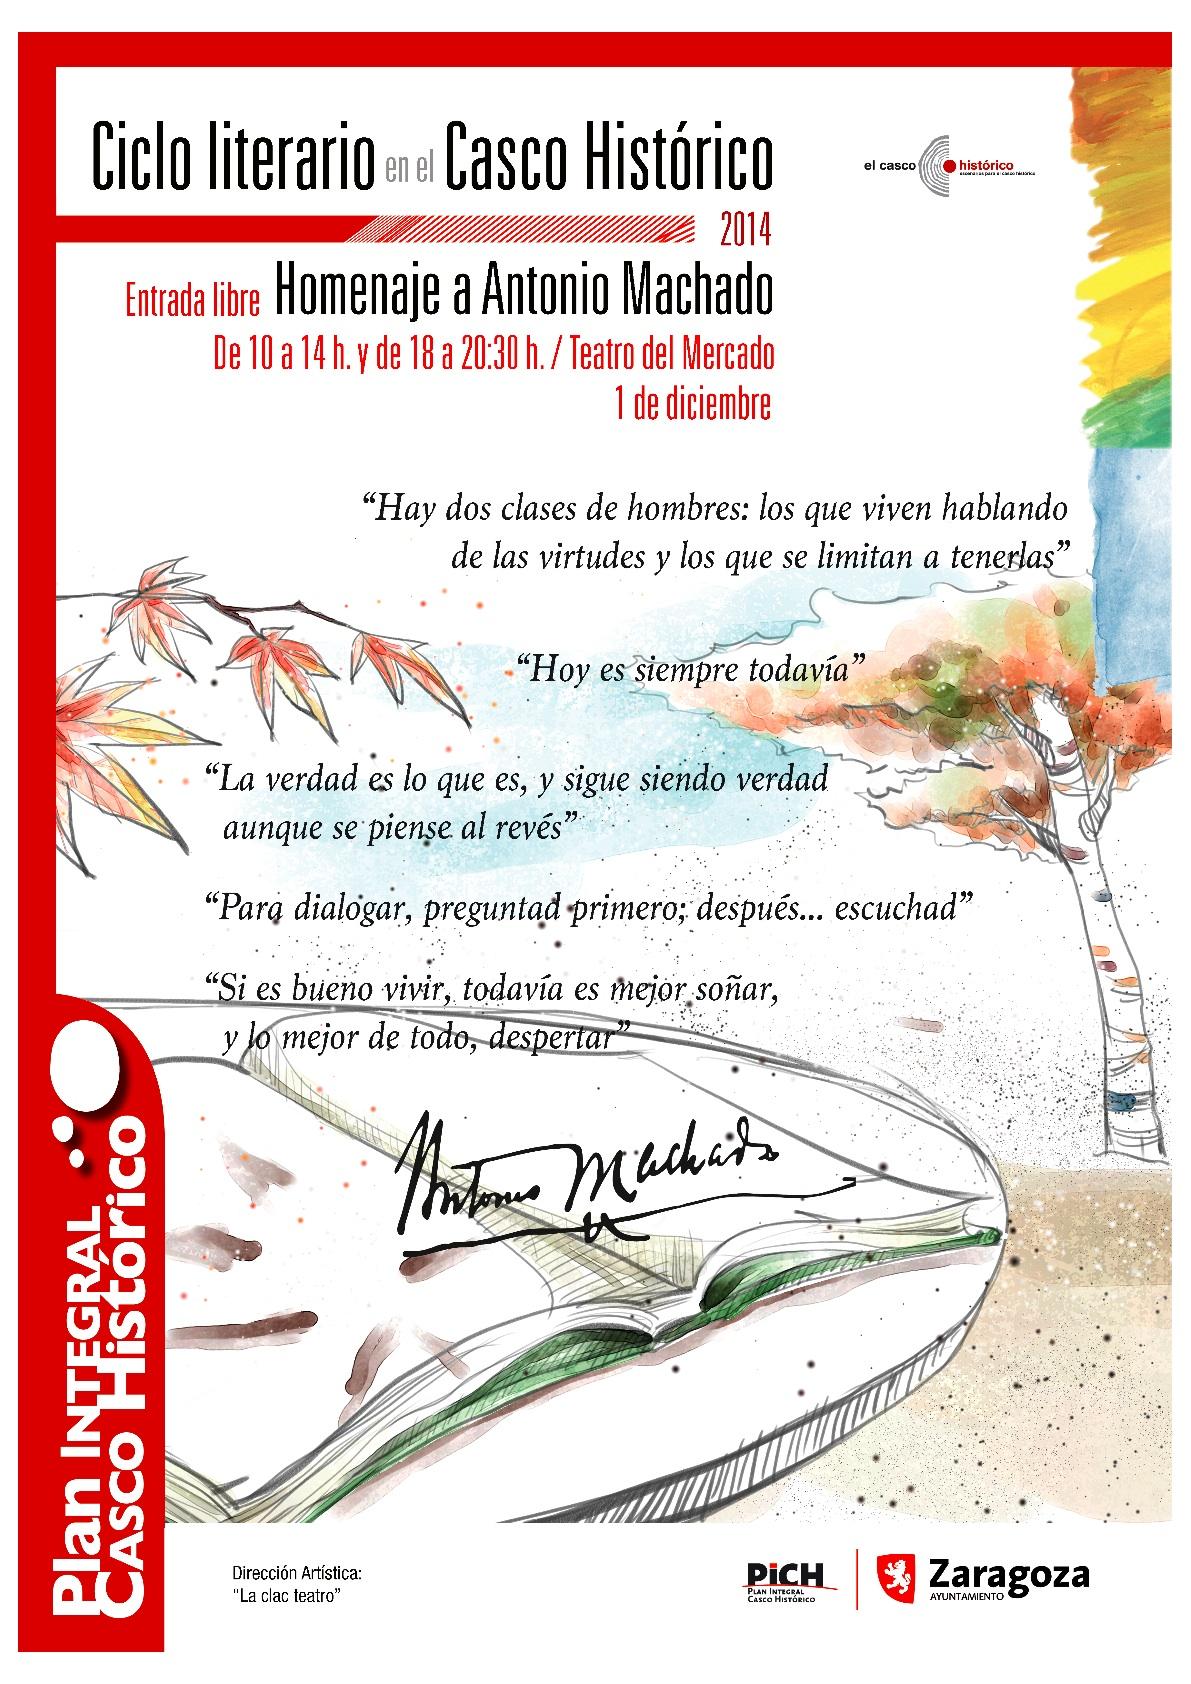 El Casco Histórico rinde homenaje a Antonio Machado